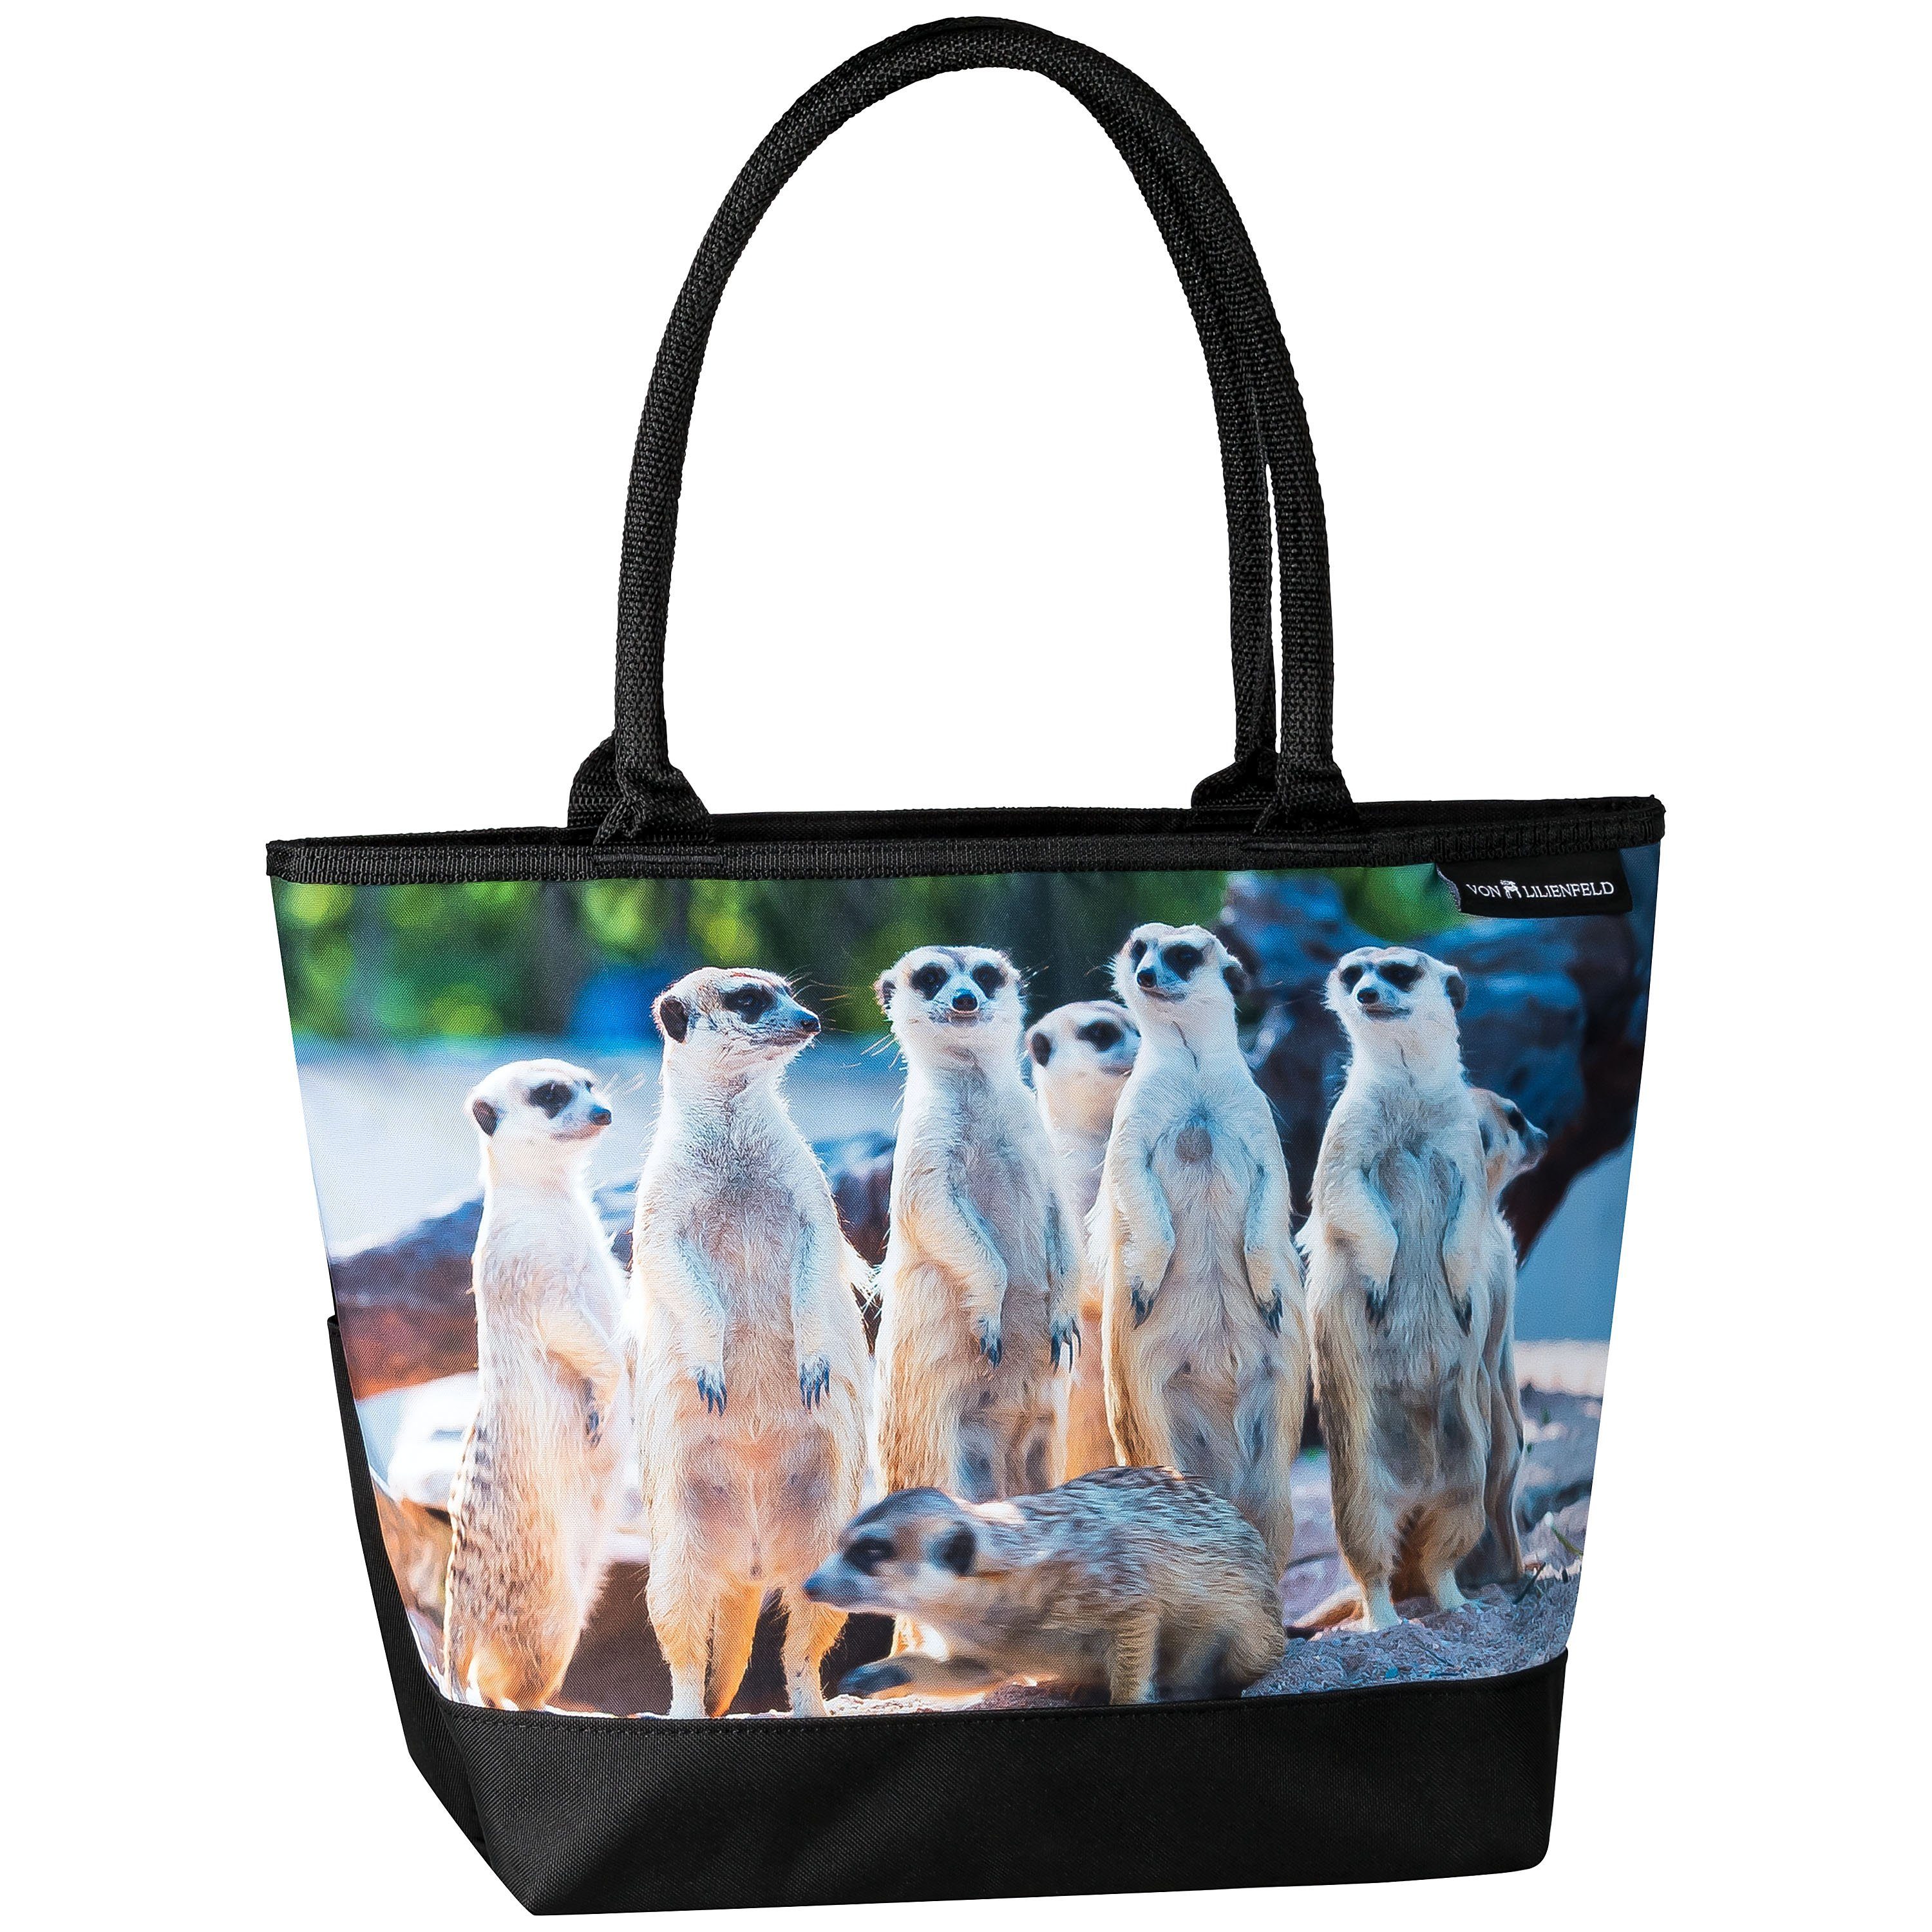 von Lilienfeld Handtasche Shopper mit Motivdruck Erdmännchen Surikate Tasche, Tiermotiv